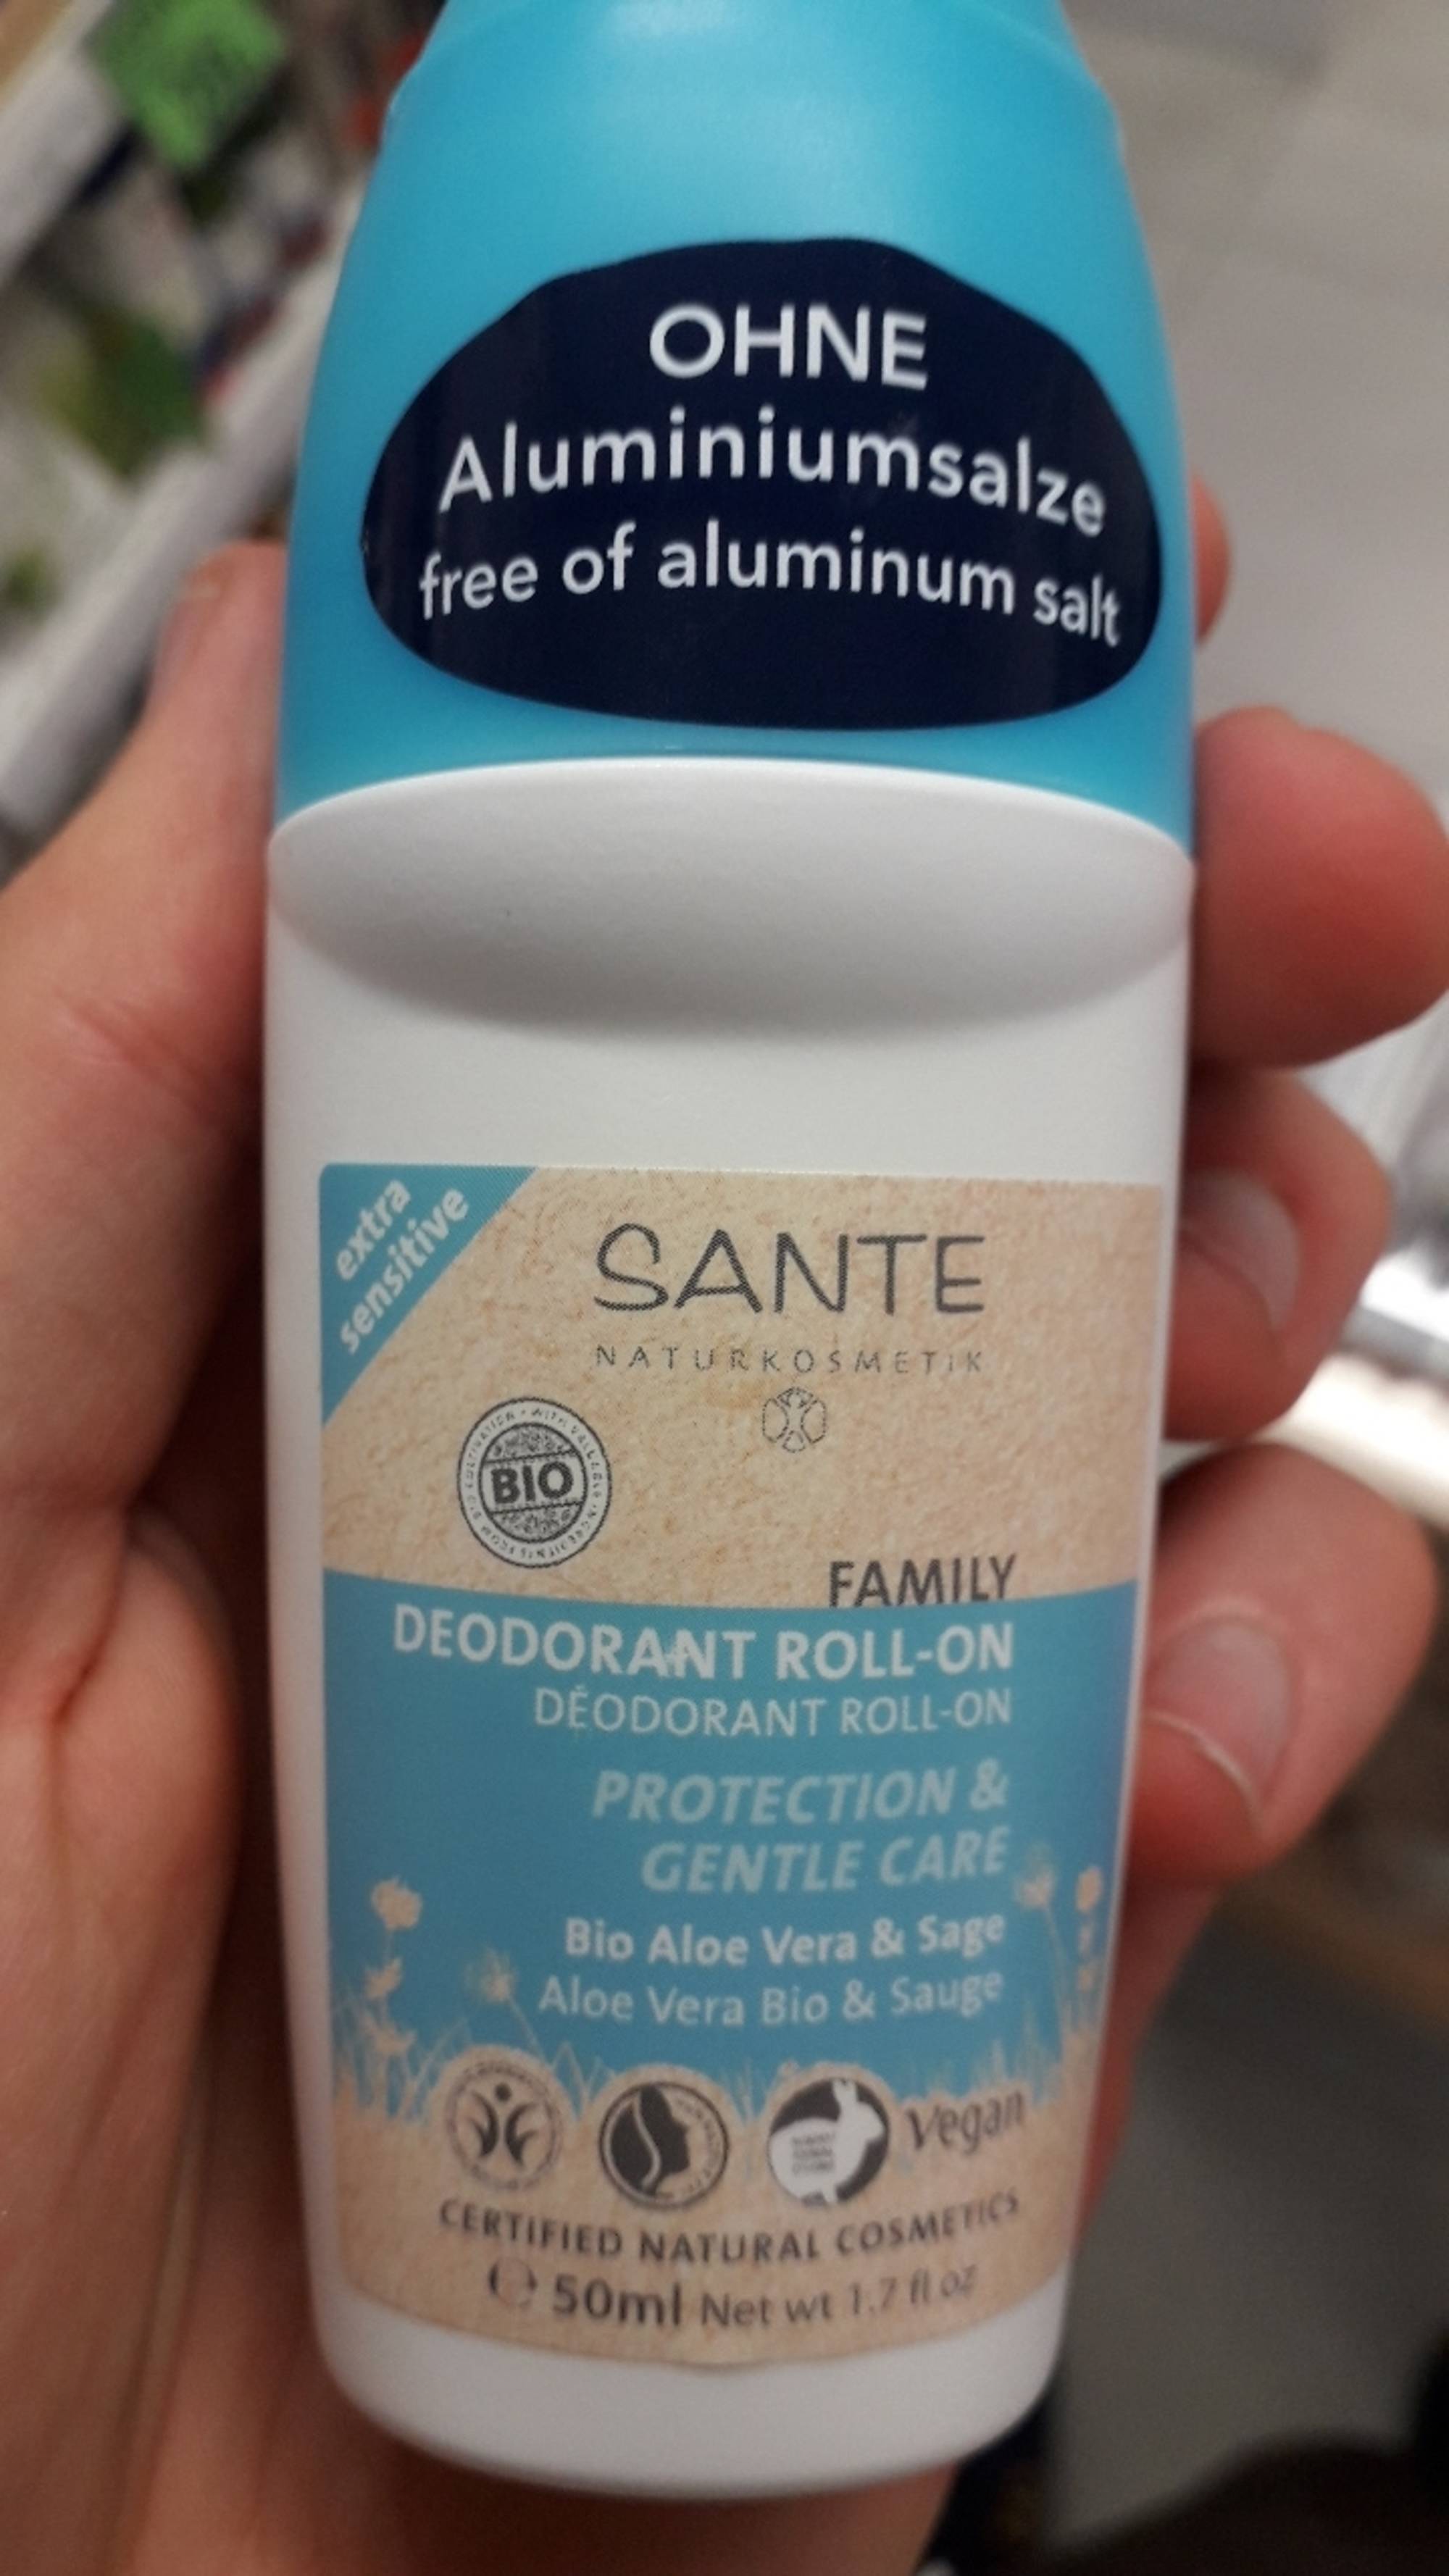 SANTÉ - Family - Déodorant roll-on aloe vera bio & sauge